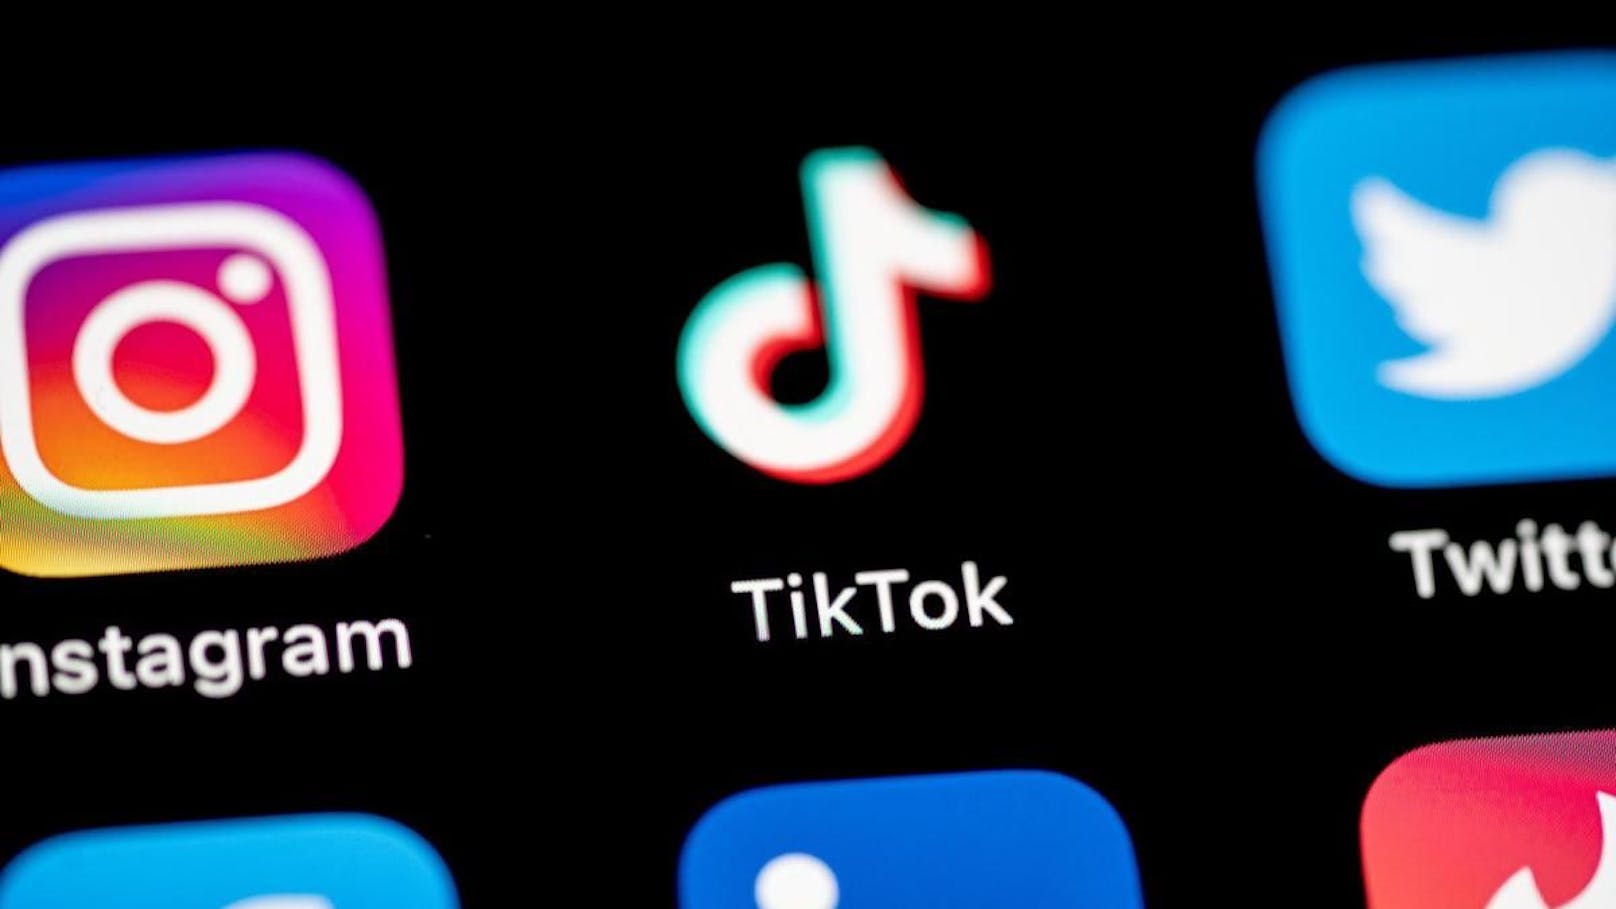 Das Gesetz könnte zur Verbannung von TikTok aus amerikanischen App-Stores führen, wenn der Dienst im Besitz des chinesischen Konzerns Bytedance bleibt.